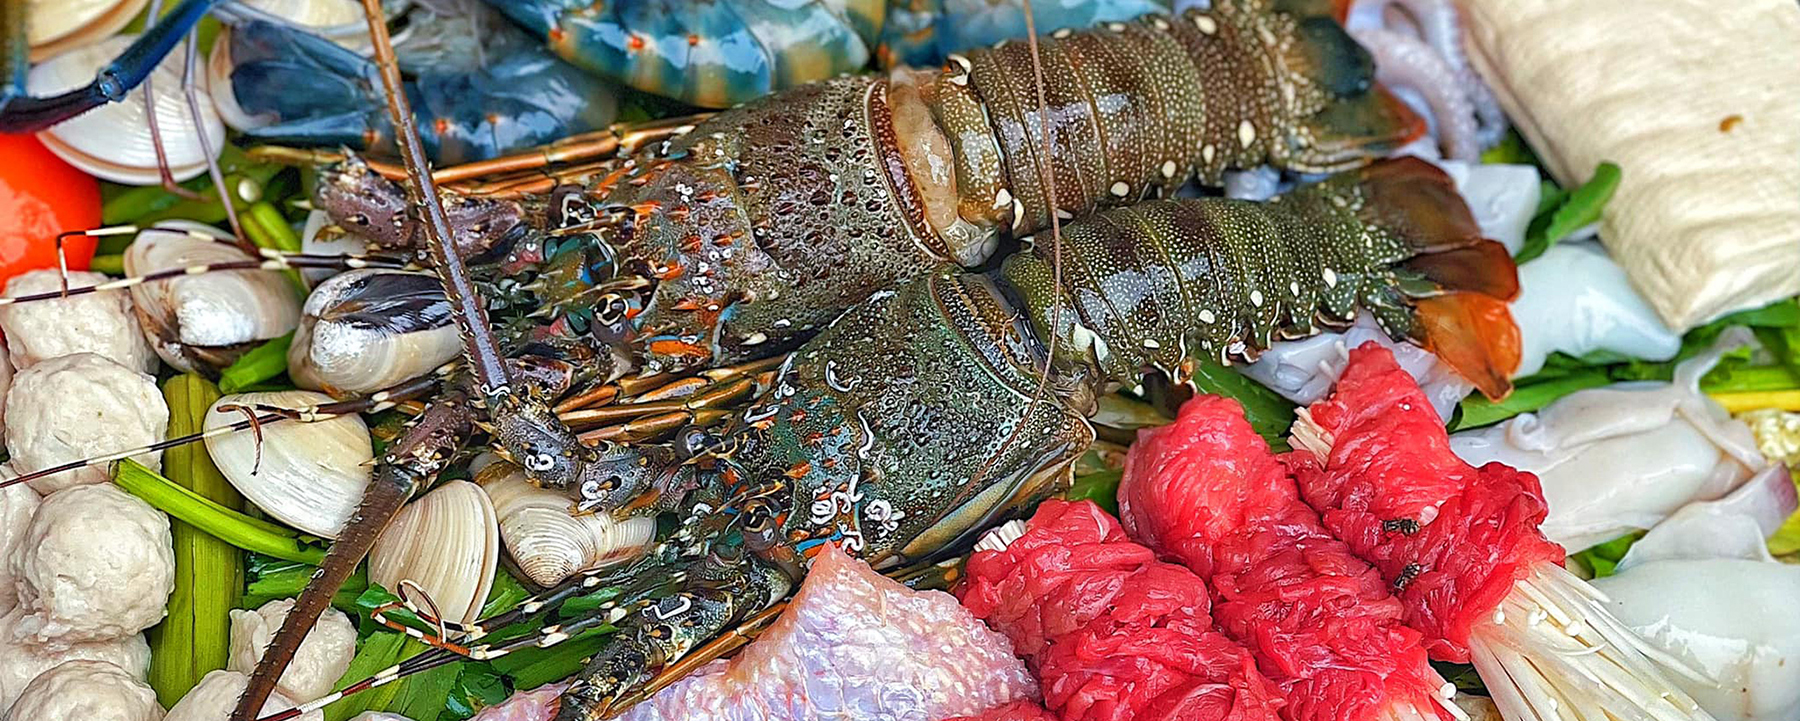 Quán lẩu hải sản nào được đánh giá cao nhất ở Đà Nẵng?
